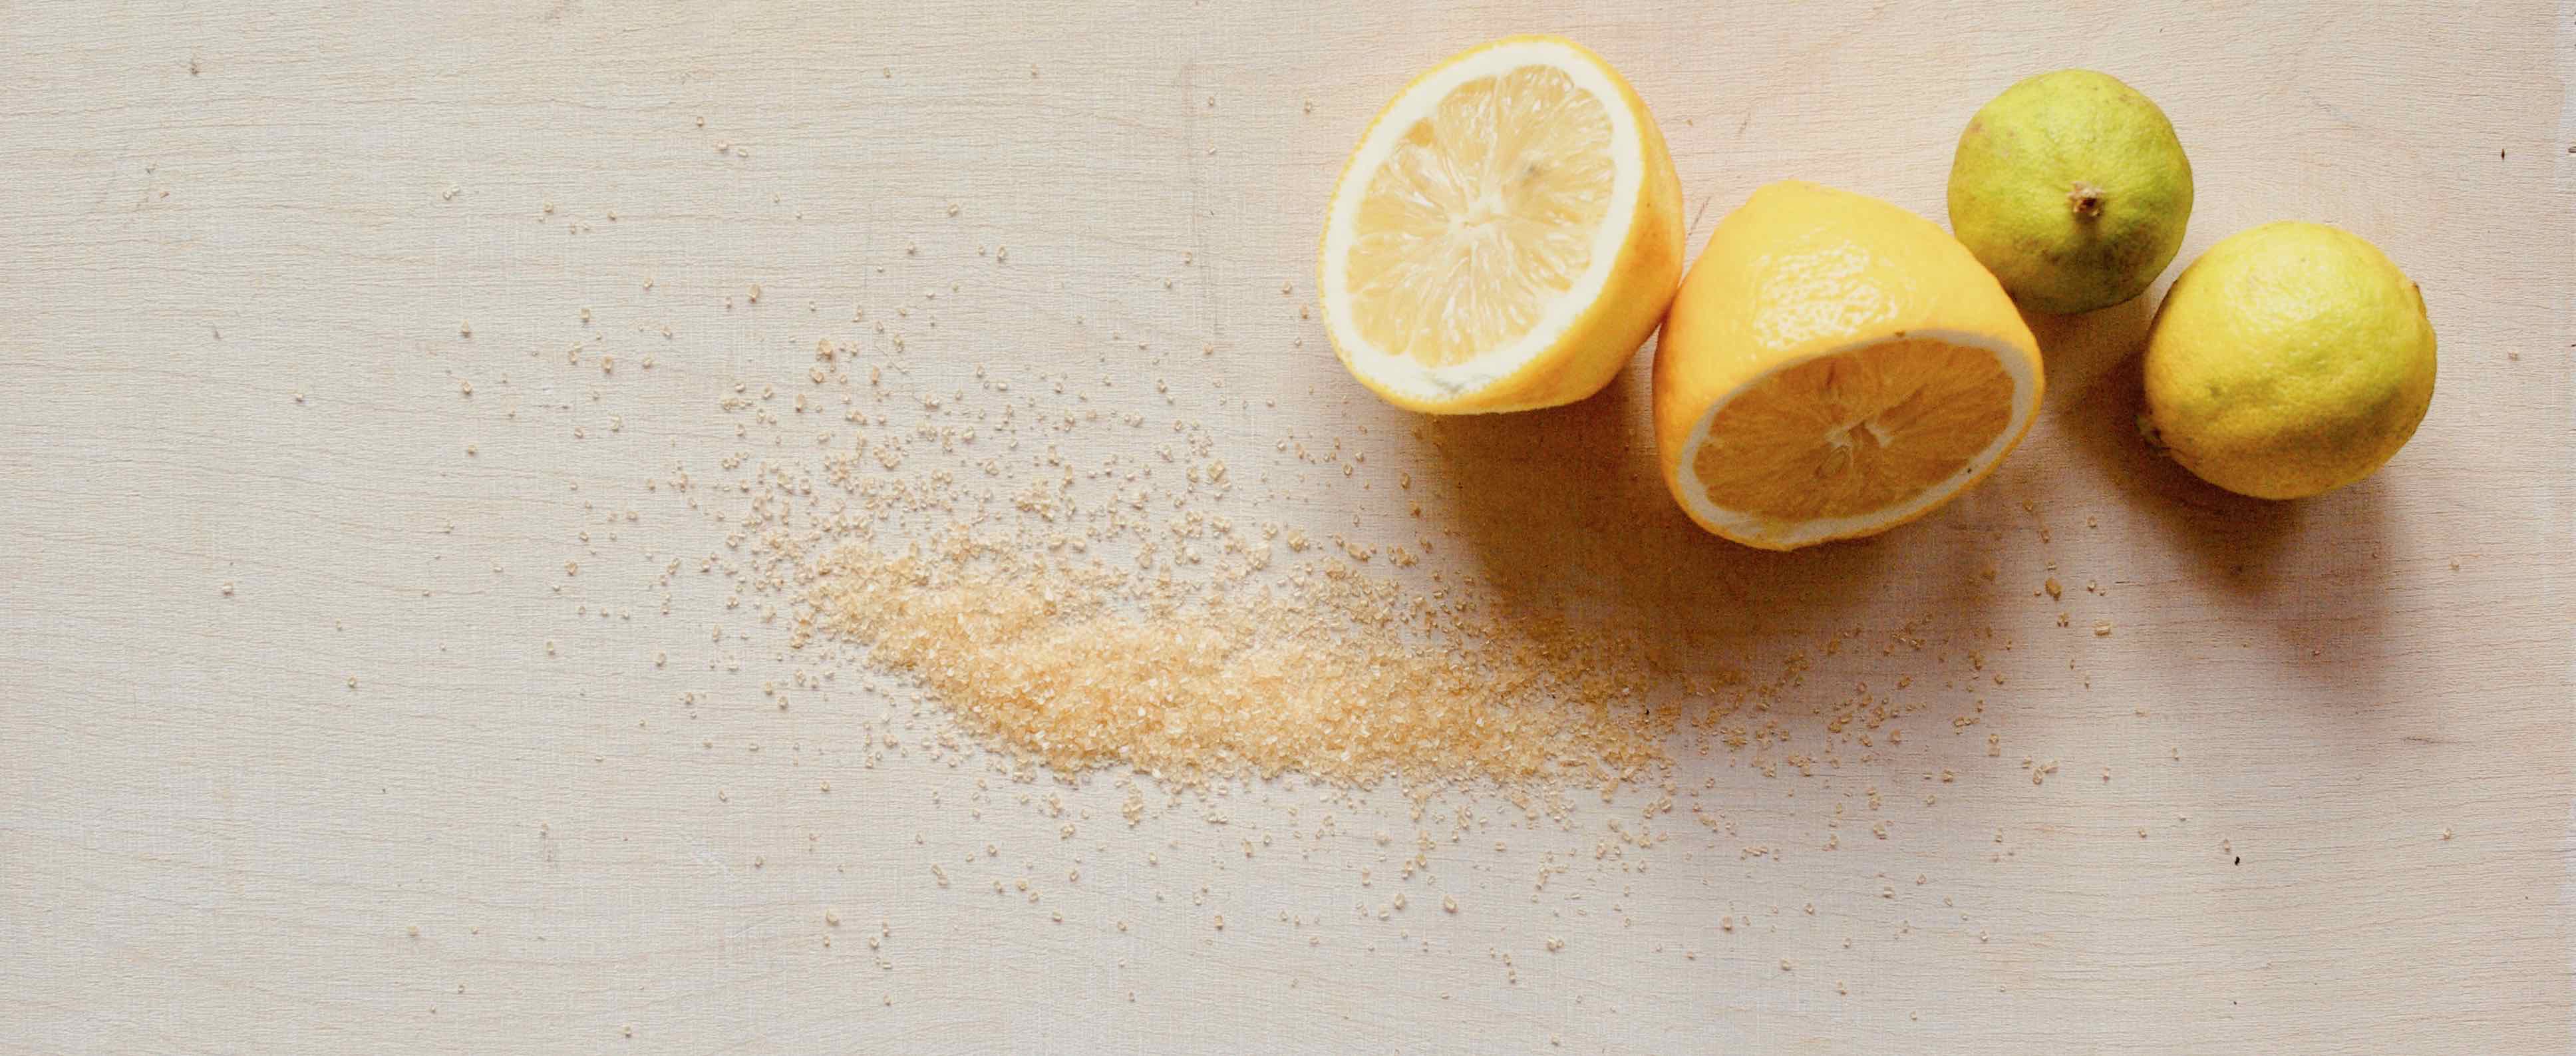 Cukrová depilační hmota se vyrábí z cukru a citronové šťávy.